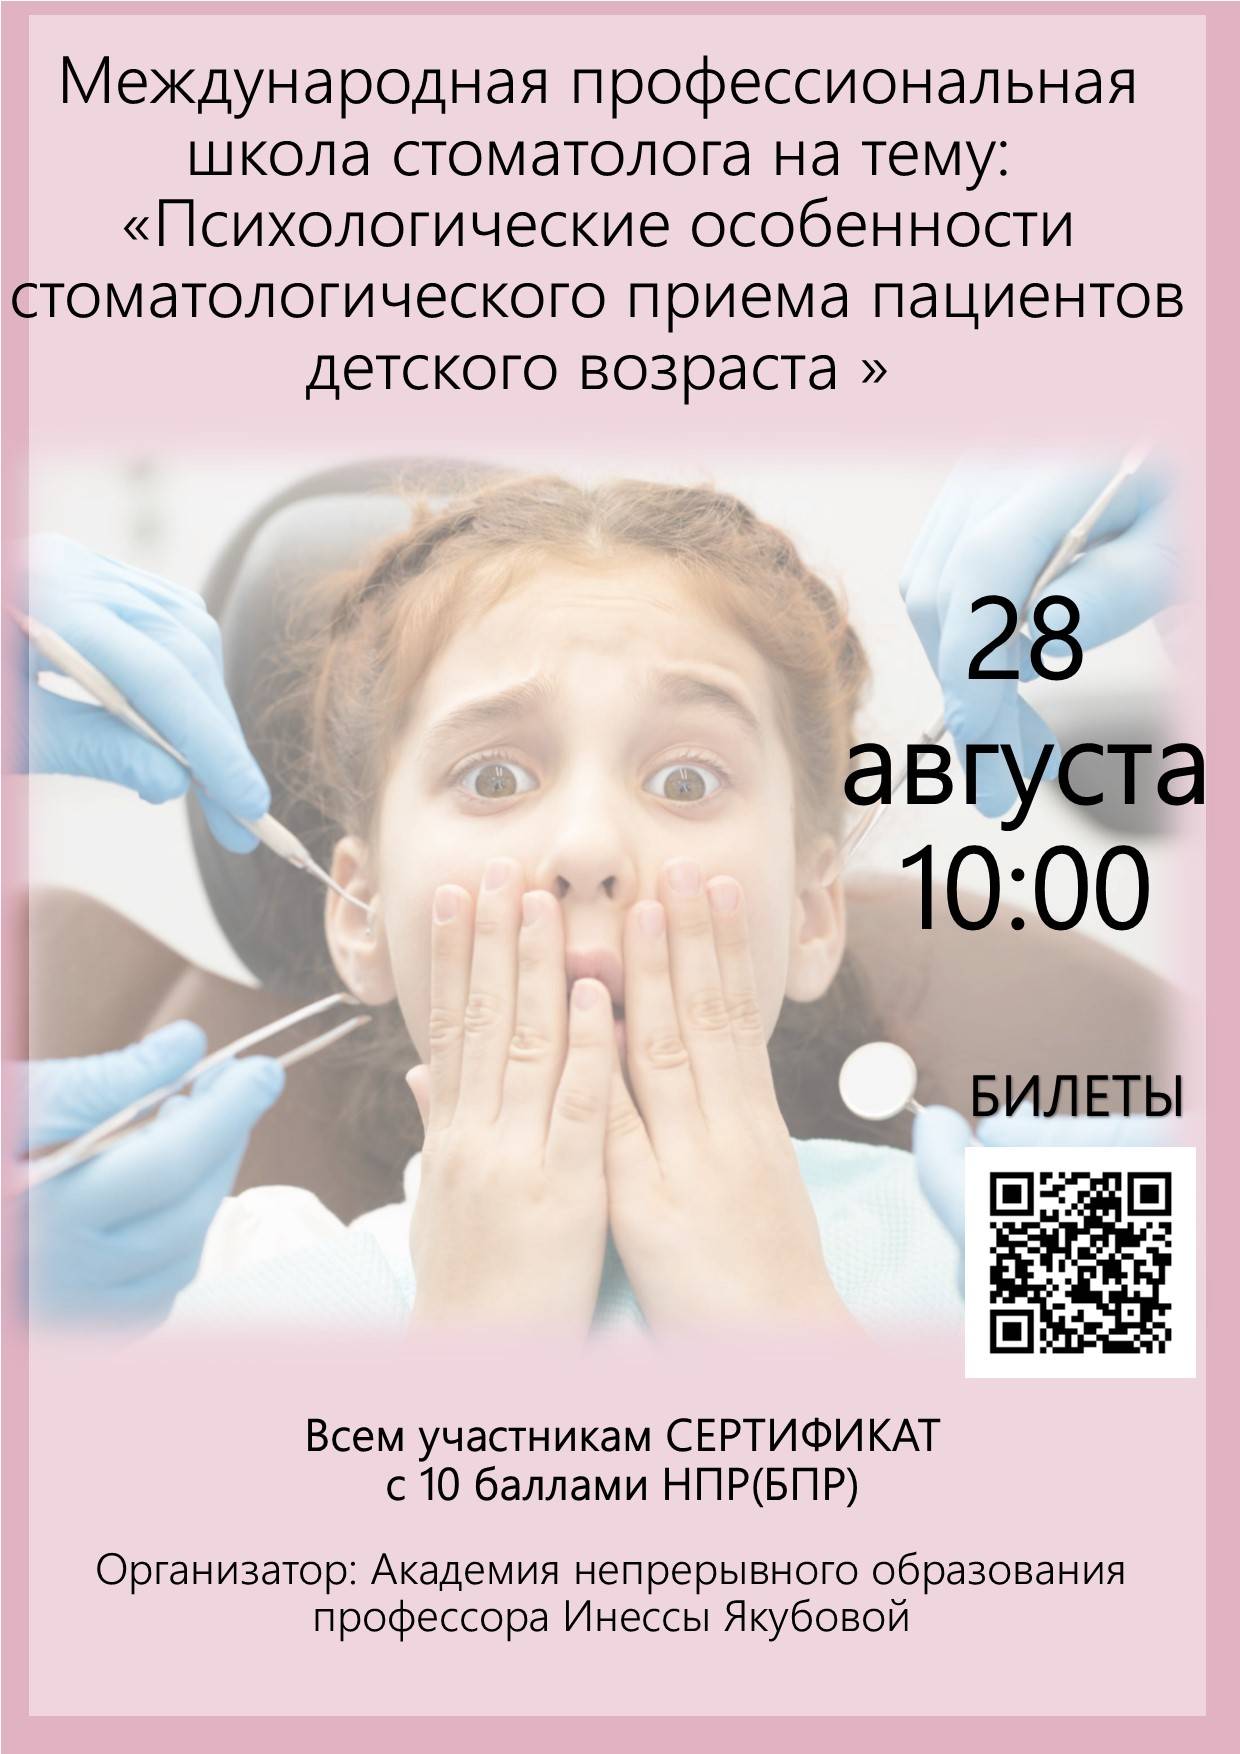 Международная профессиональная школа стоматолога на тему: «Психологические особенности стоматологического приема пациентов детского возраста»